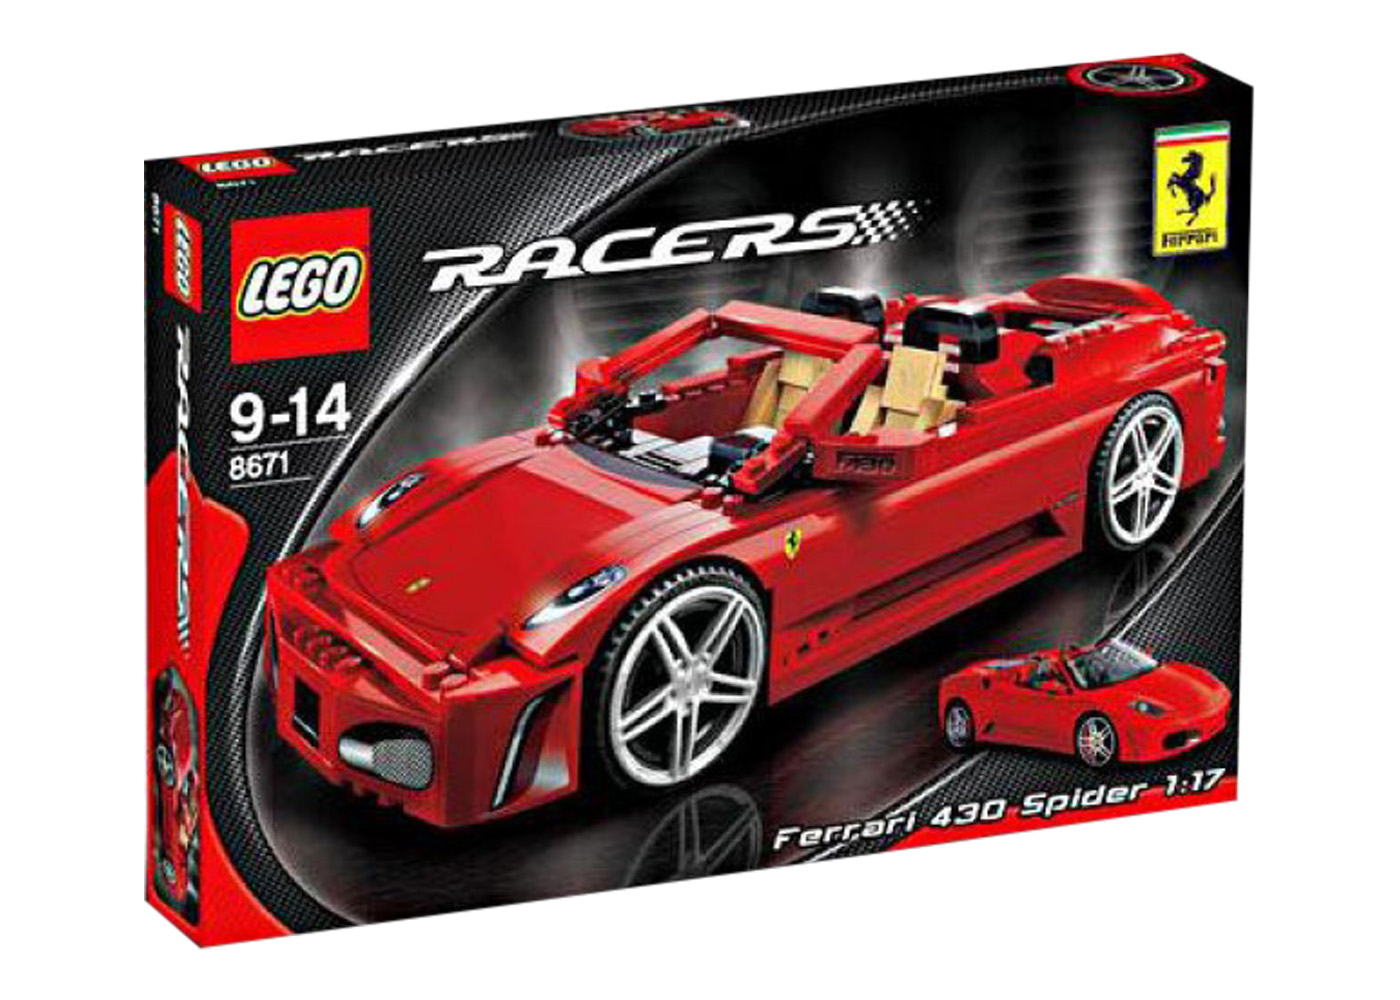 LEGO Racers Ferrari 430 Spider Set 8671 - US